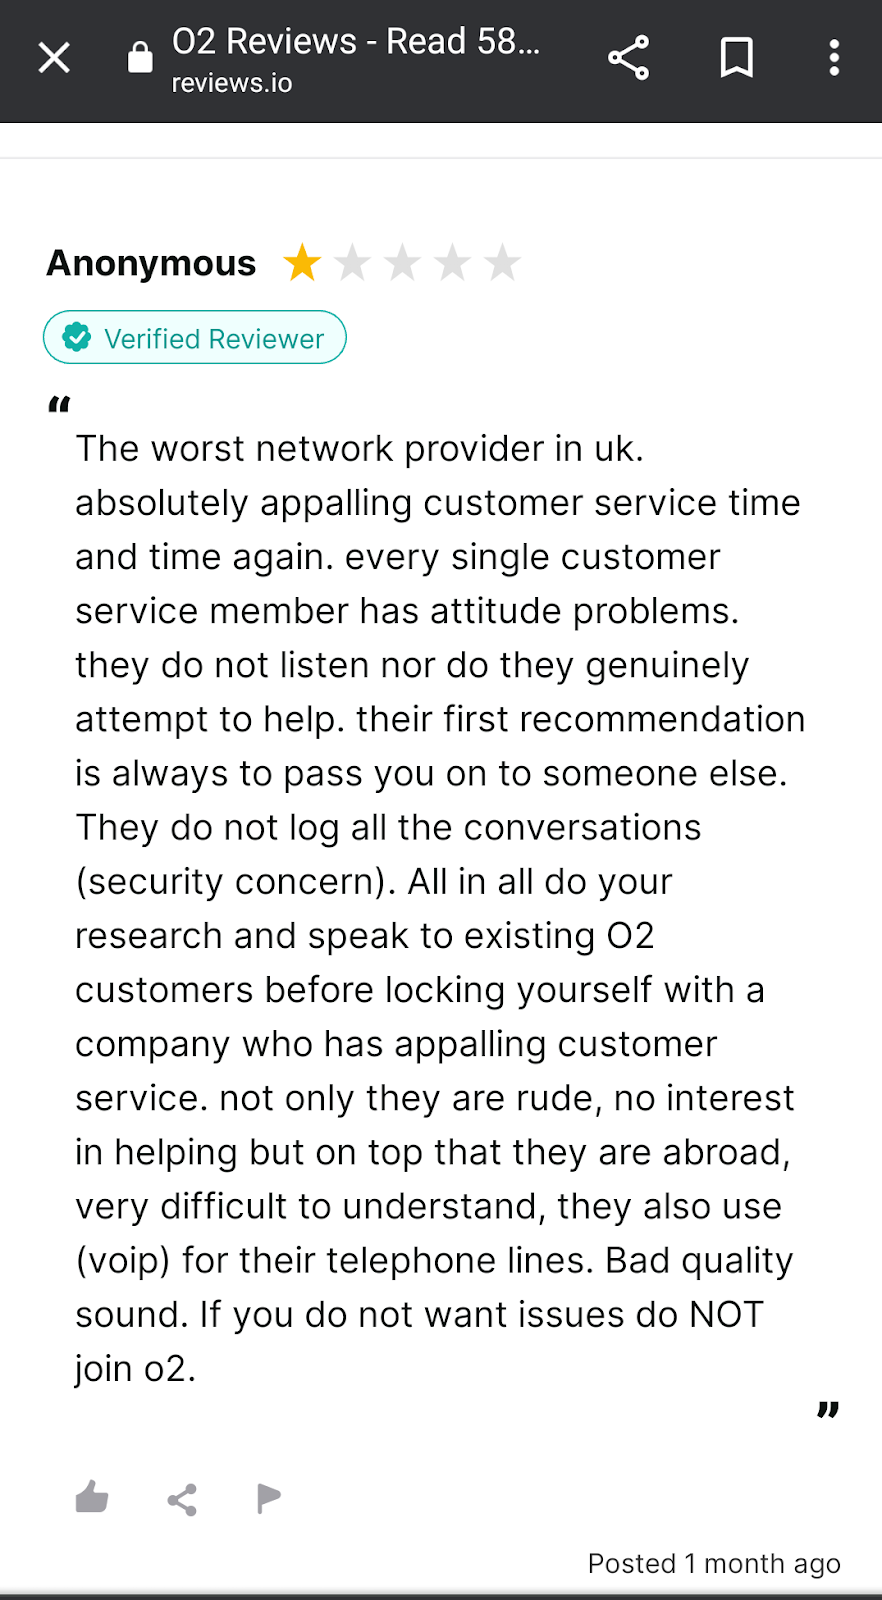 O2 Phone Service Reviews On Reviews.io Site